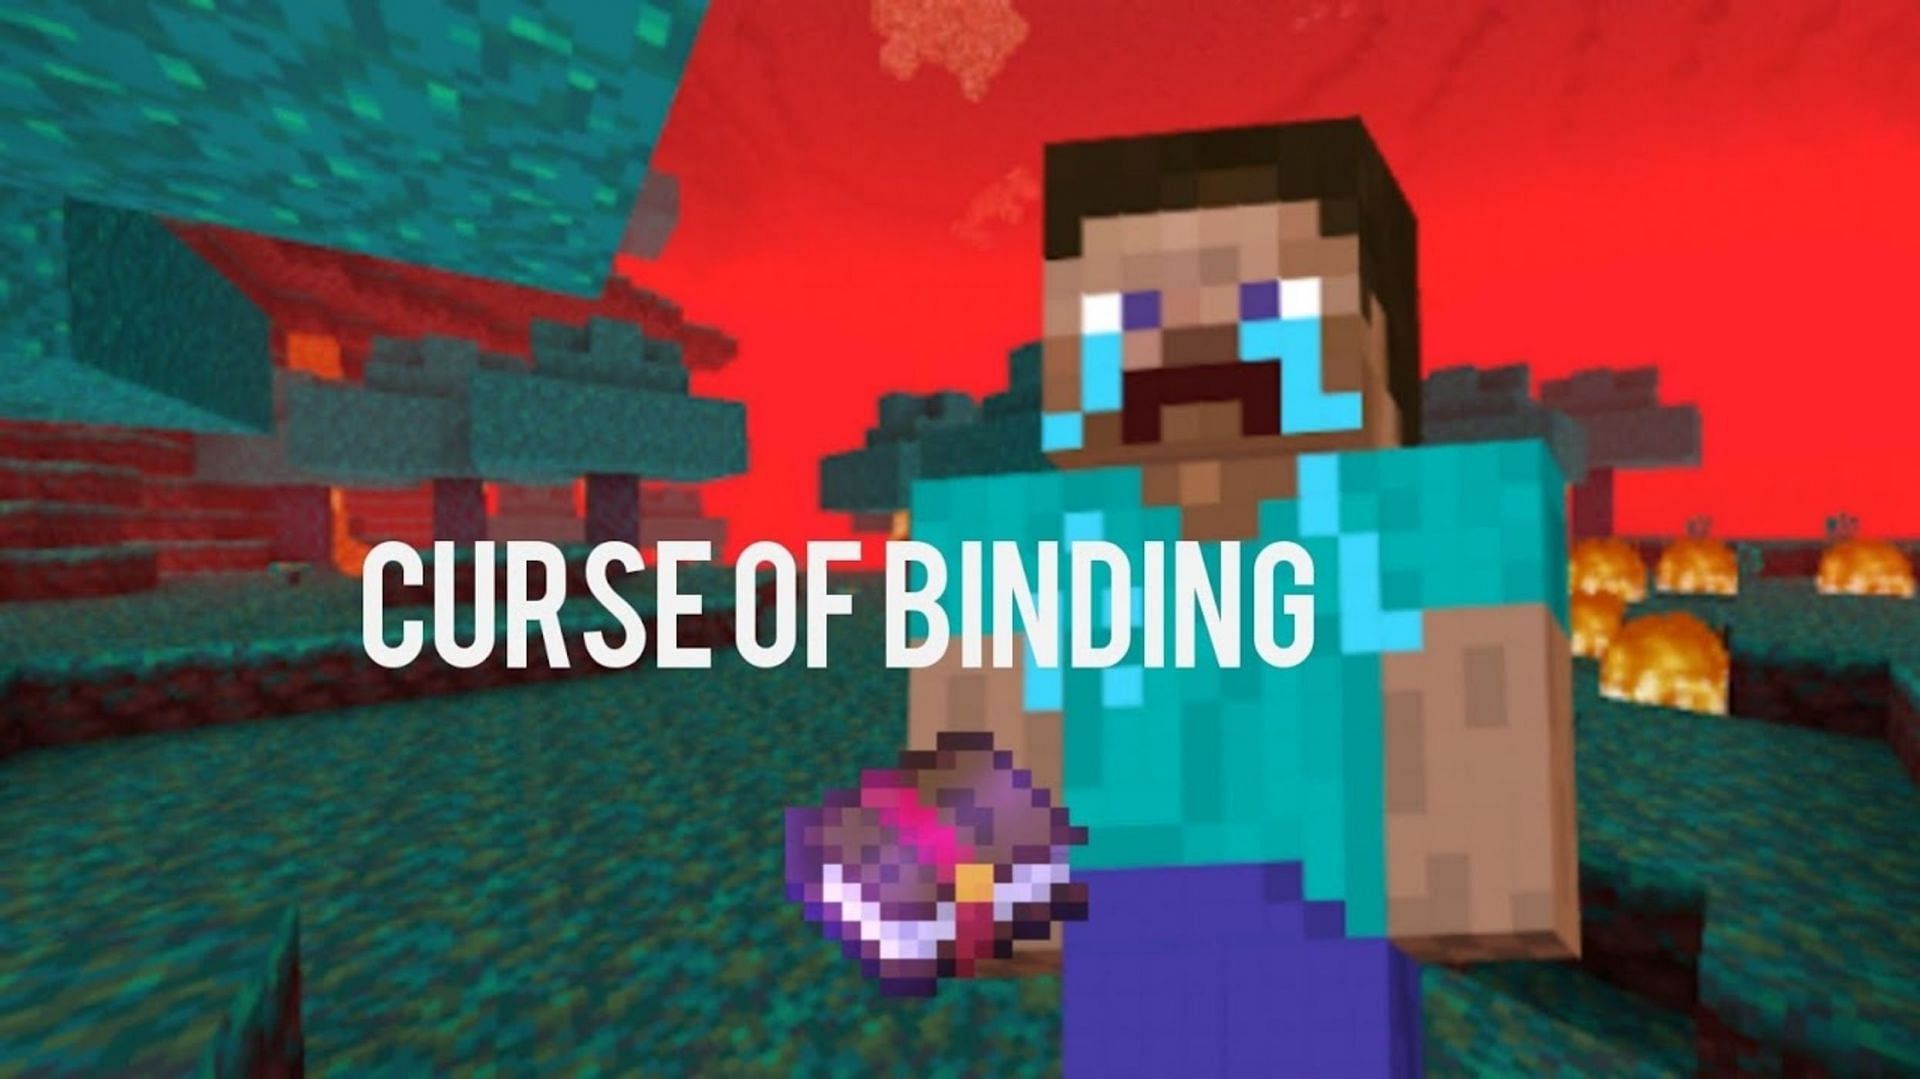 Minecraft: Curse of Vanishing Explained